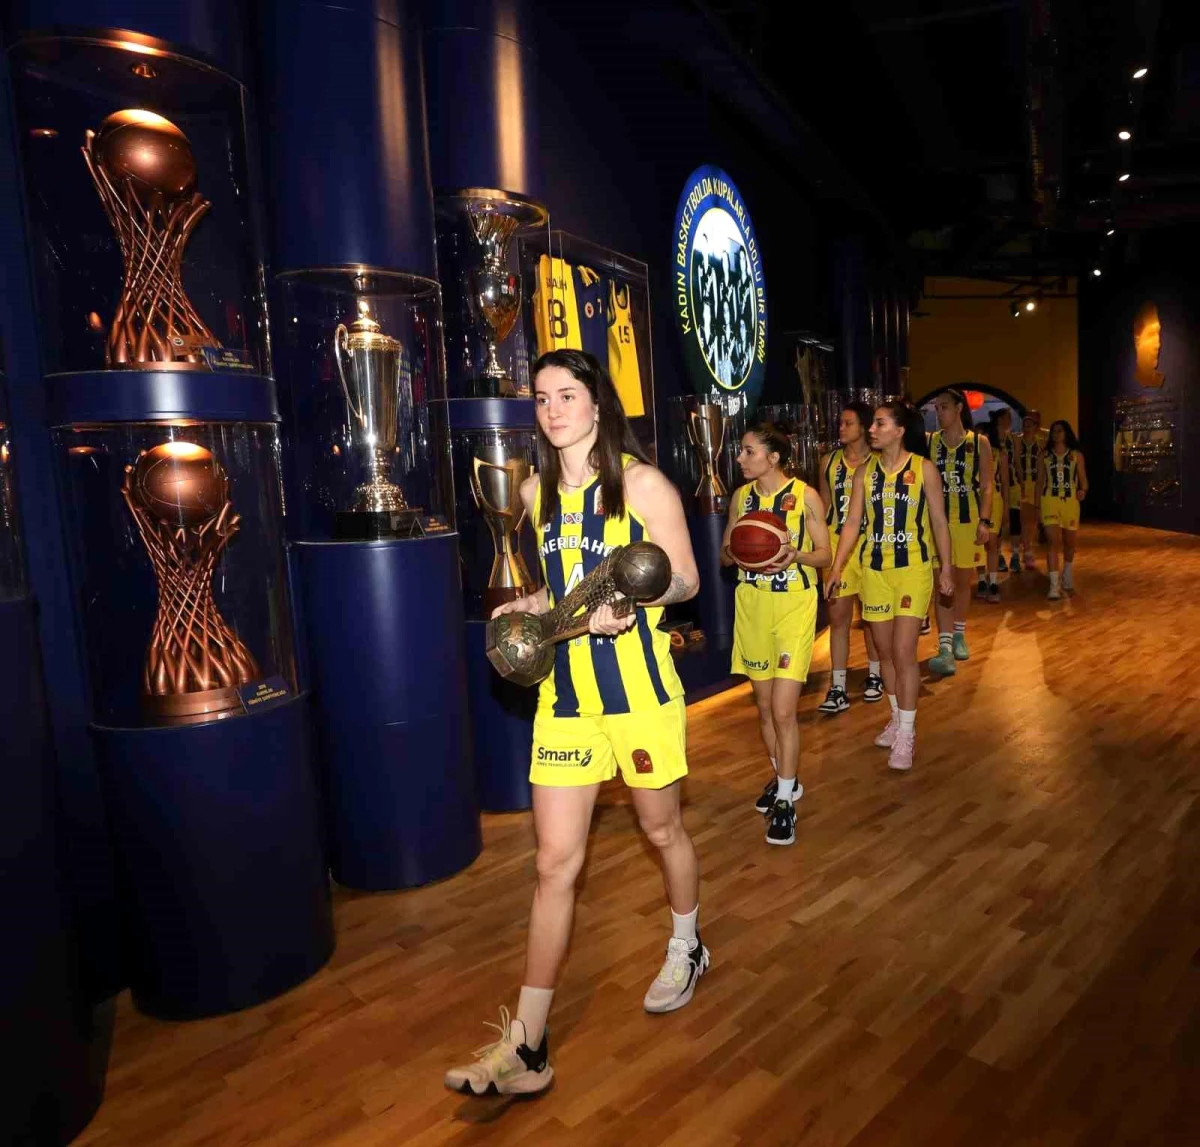 Fenerbahçe Alagöz Holding Avrupa Ligi Kupası, Türkiye'nin Birinci Basketbol Müzesine Getirildi